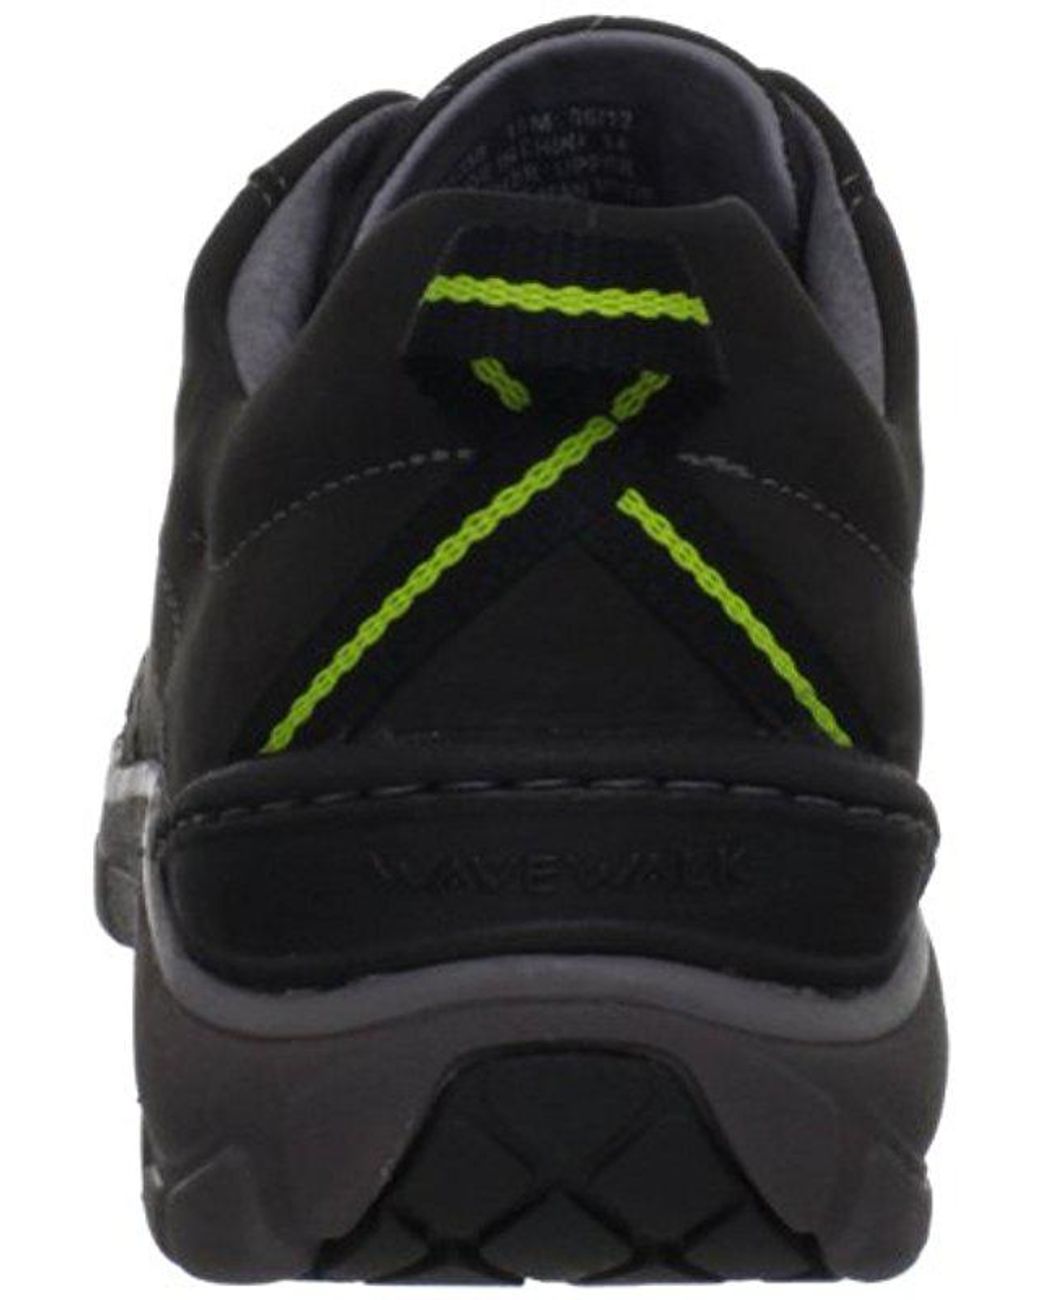 Clarks Leather Wave Trek Sneaker in Black Leather (Black) | Lyst